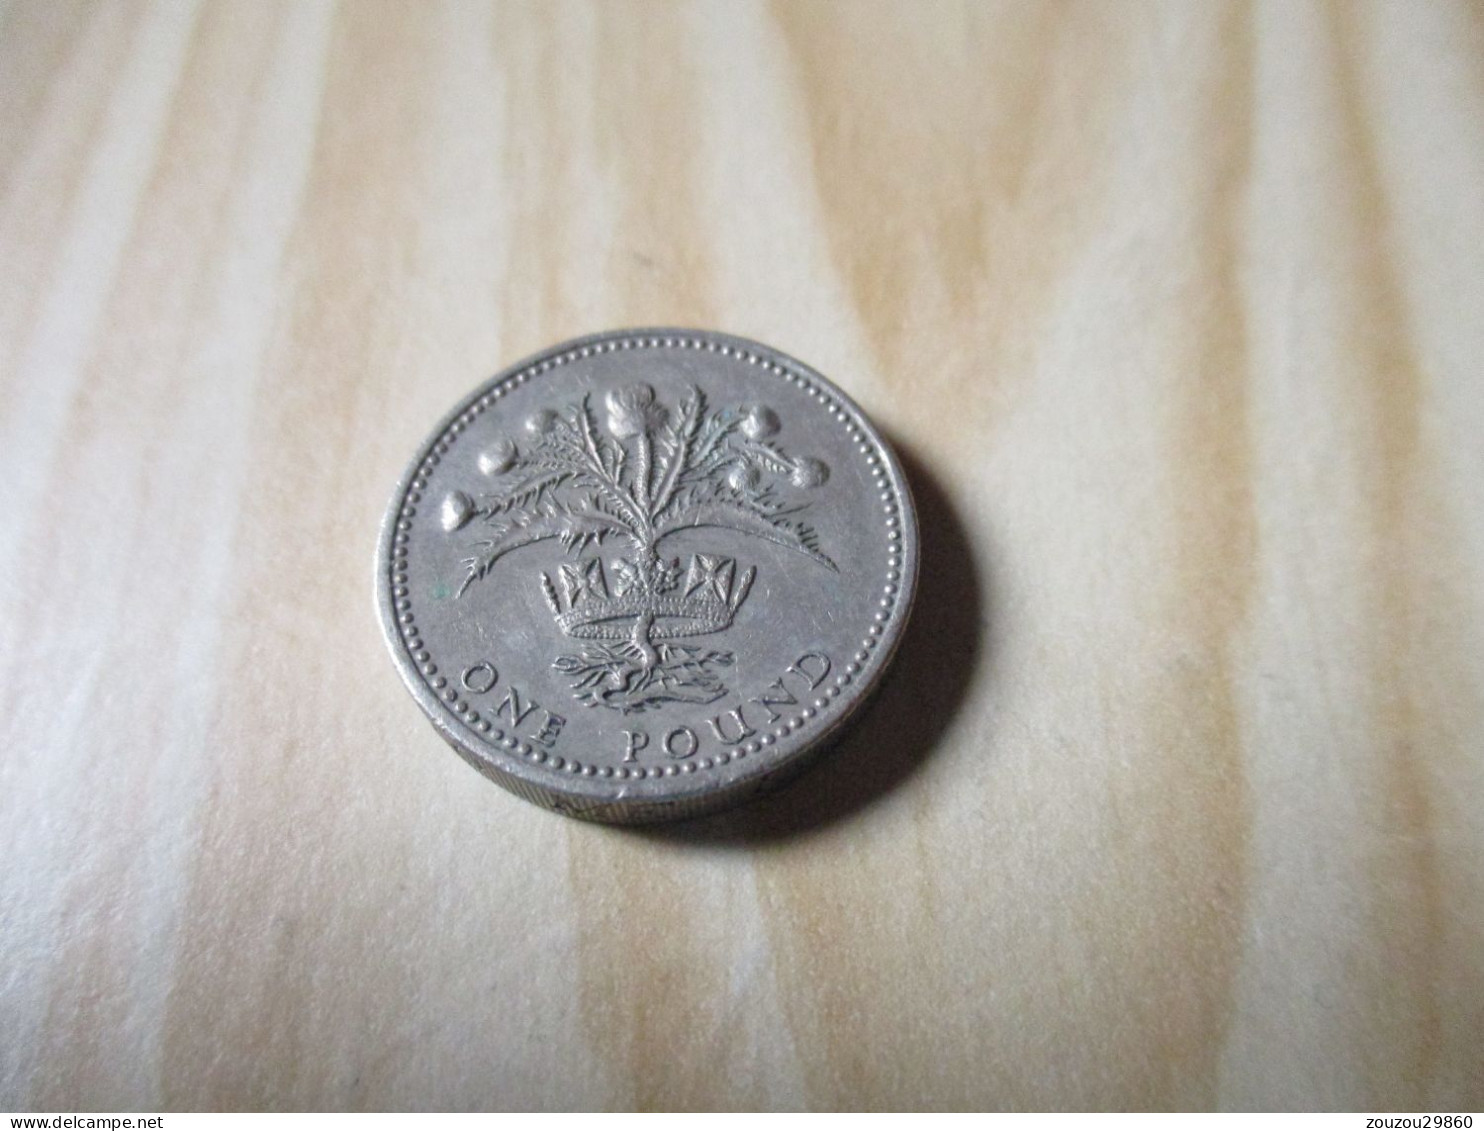 Grande-Bretagne - One Pound Elizabeth II 1984.N°502. - 1 Pound